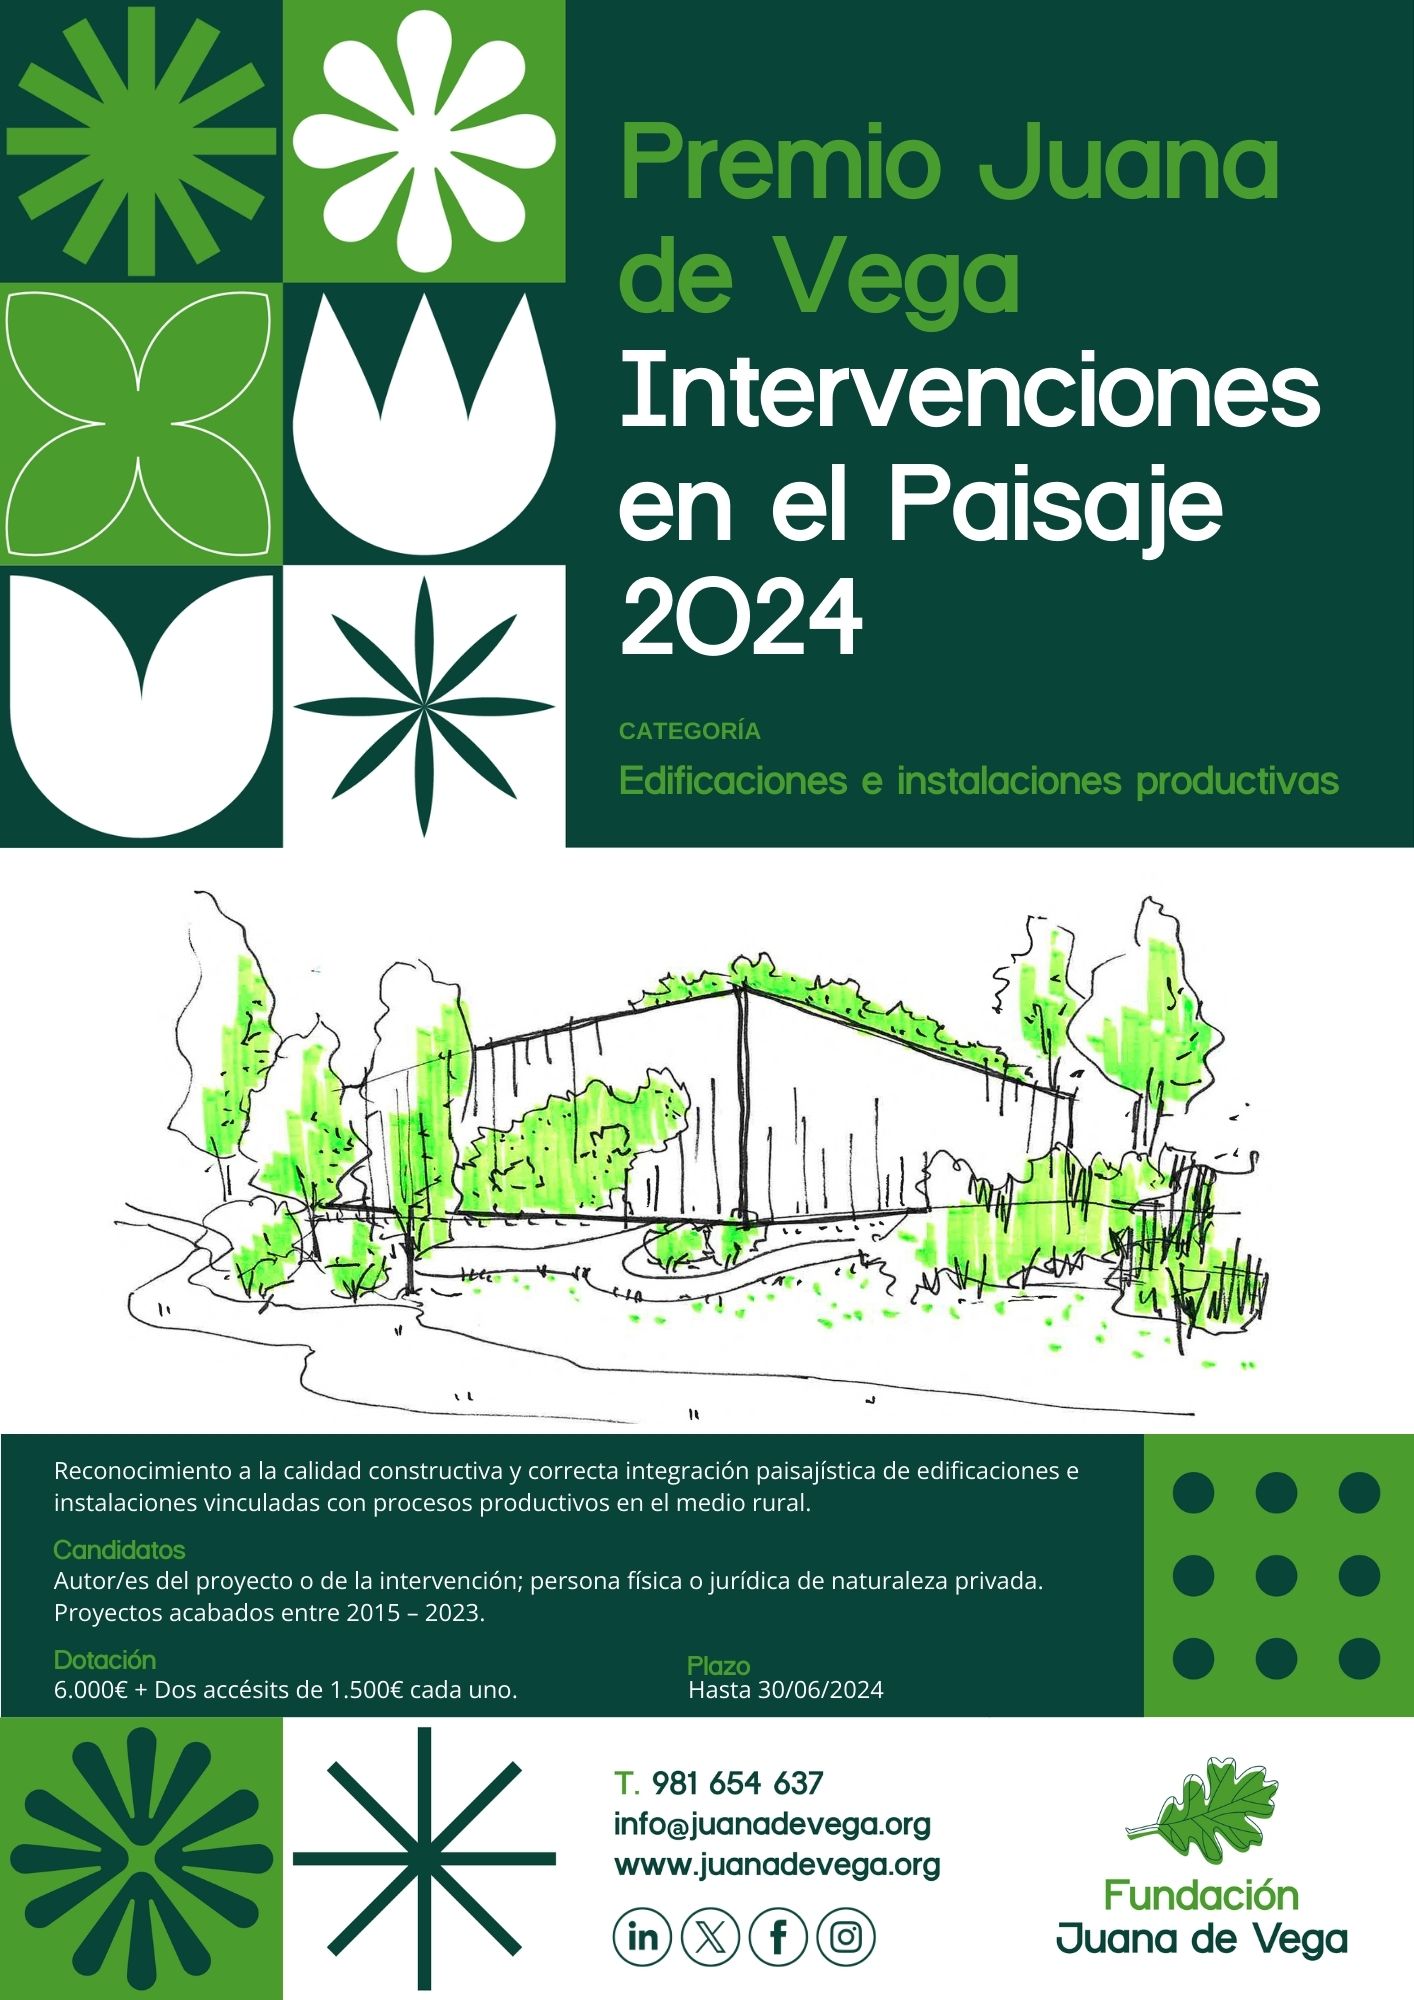 El Premio Juana de Vega de Intervenciones en el Paisaje 2024 estrena la categoría de “ Edificaciones e instalaciones productivas” en el medio rural